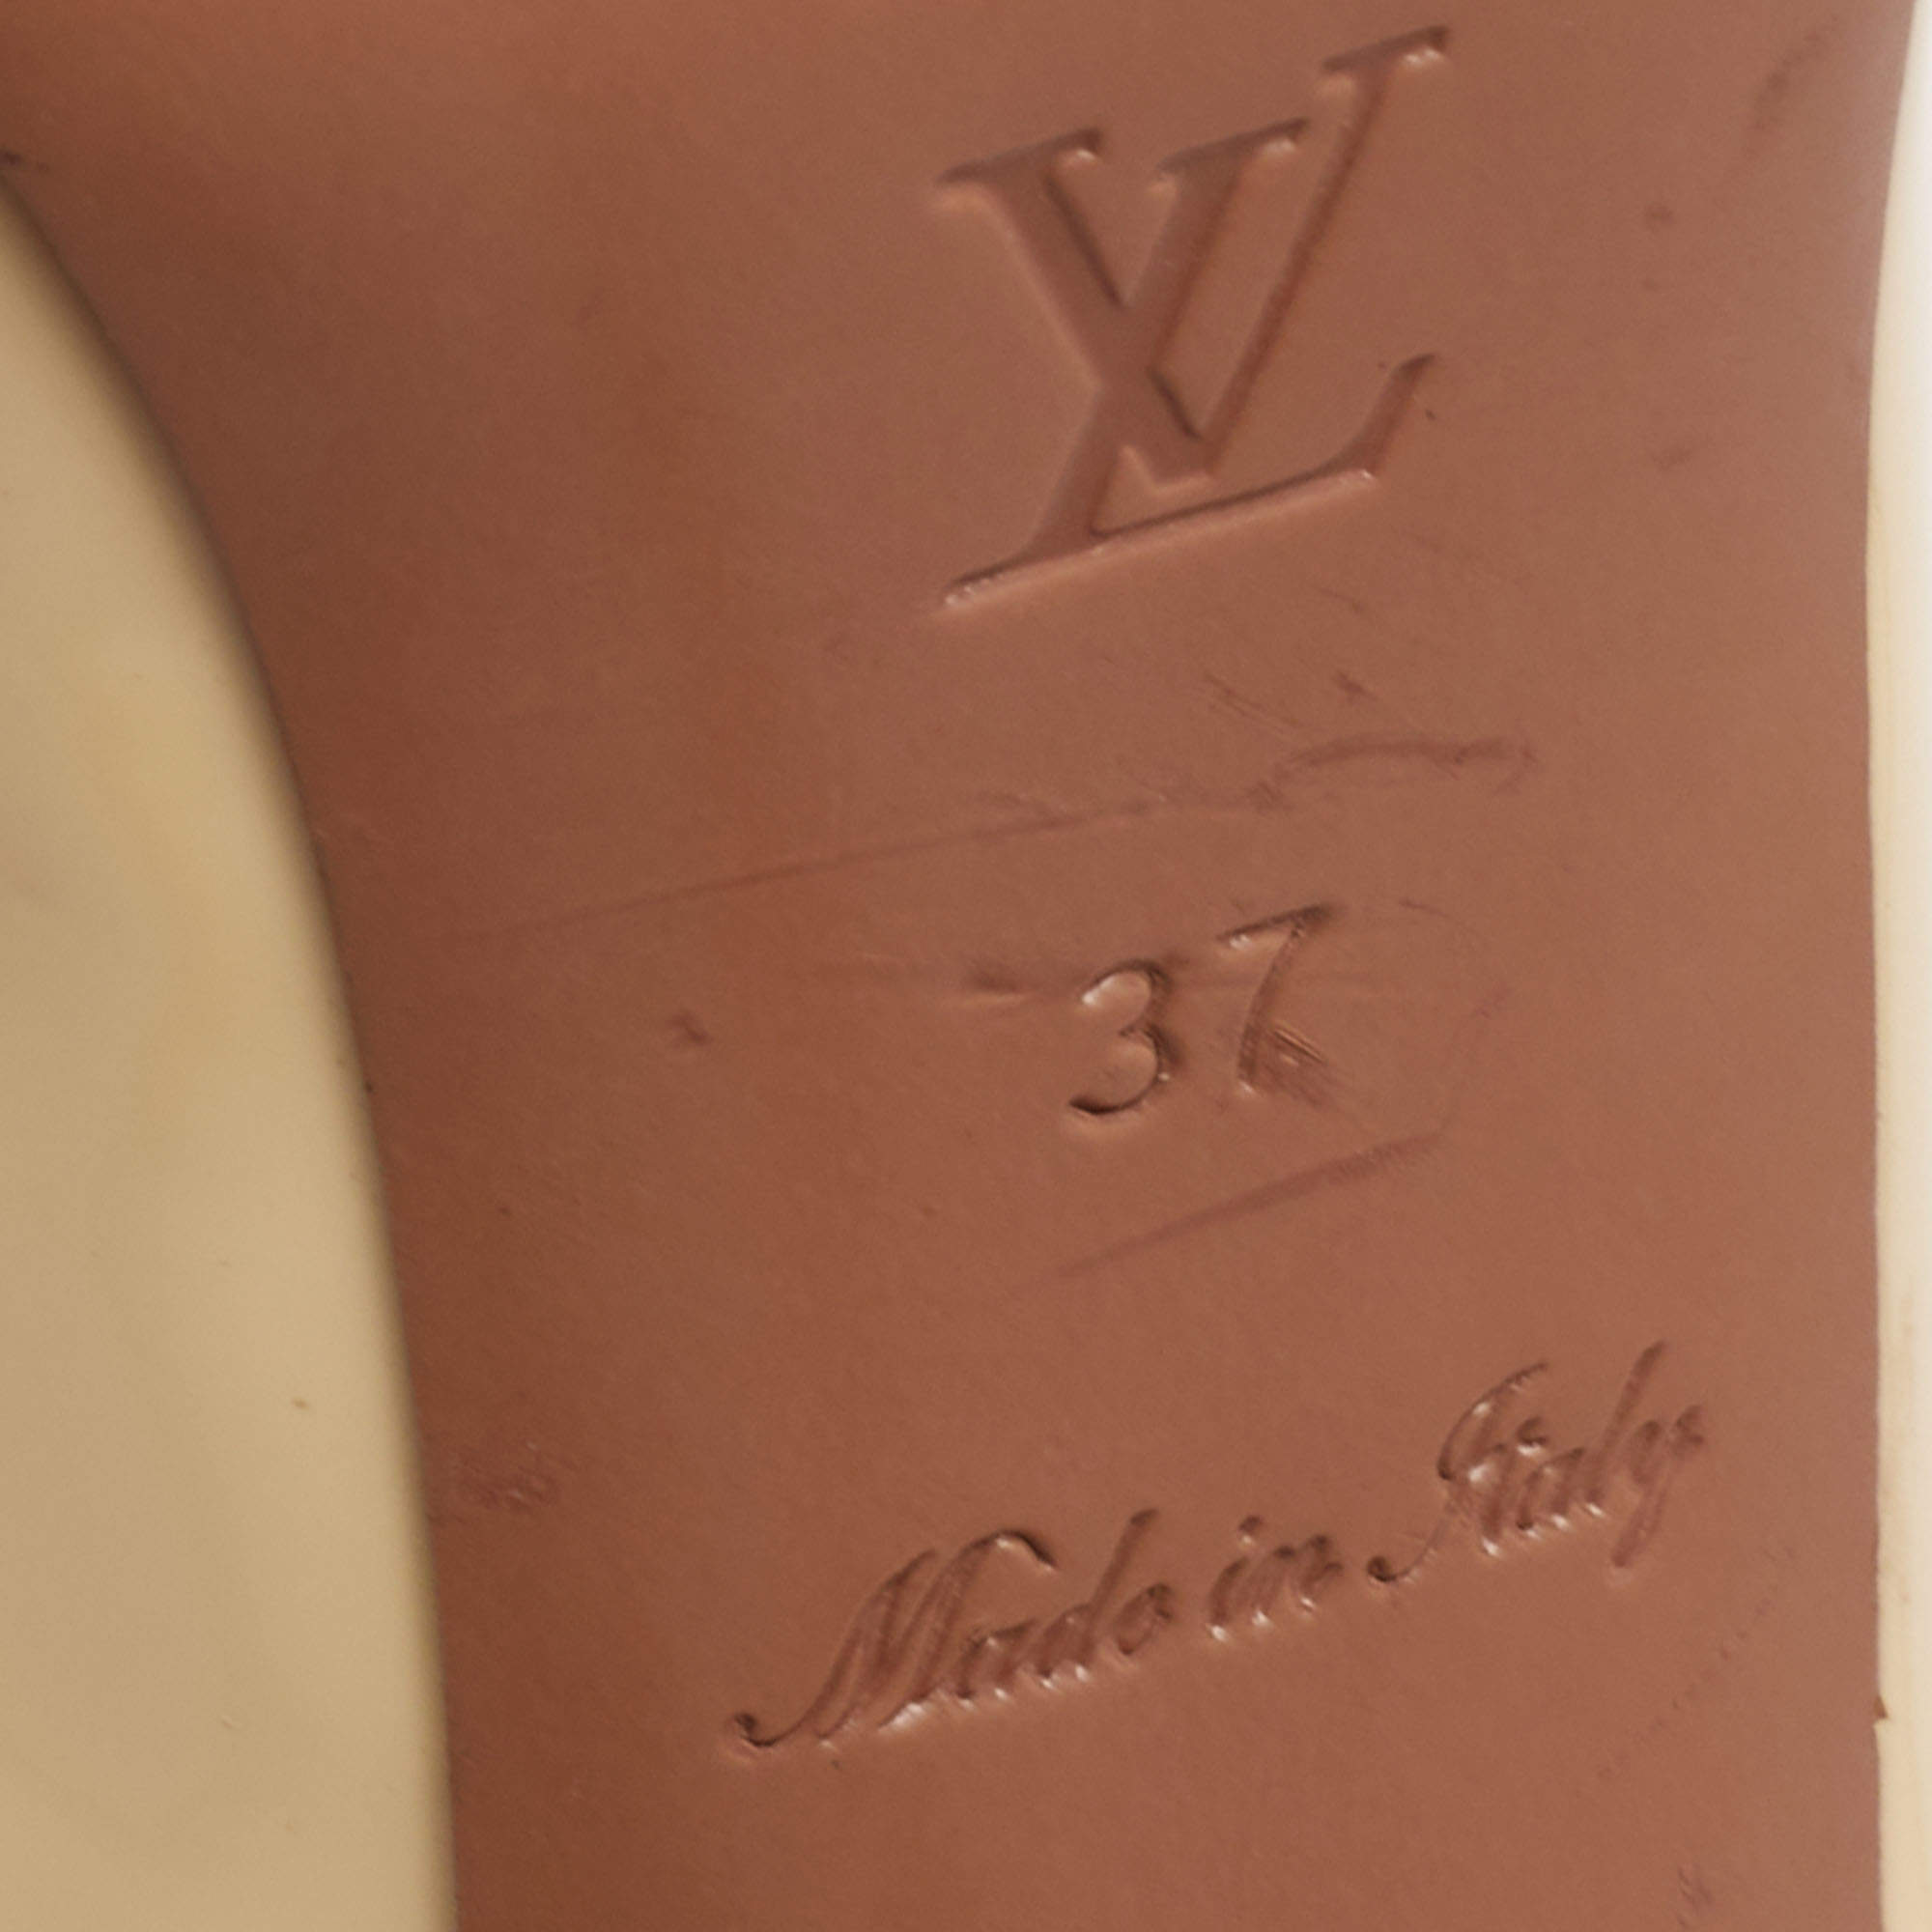 Louis Vuitton Beige Patent Leather Ankle Strap Sandals Size 38 Louis Vuitton